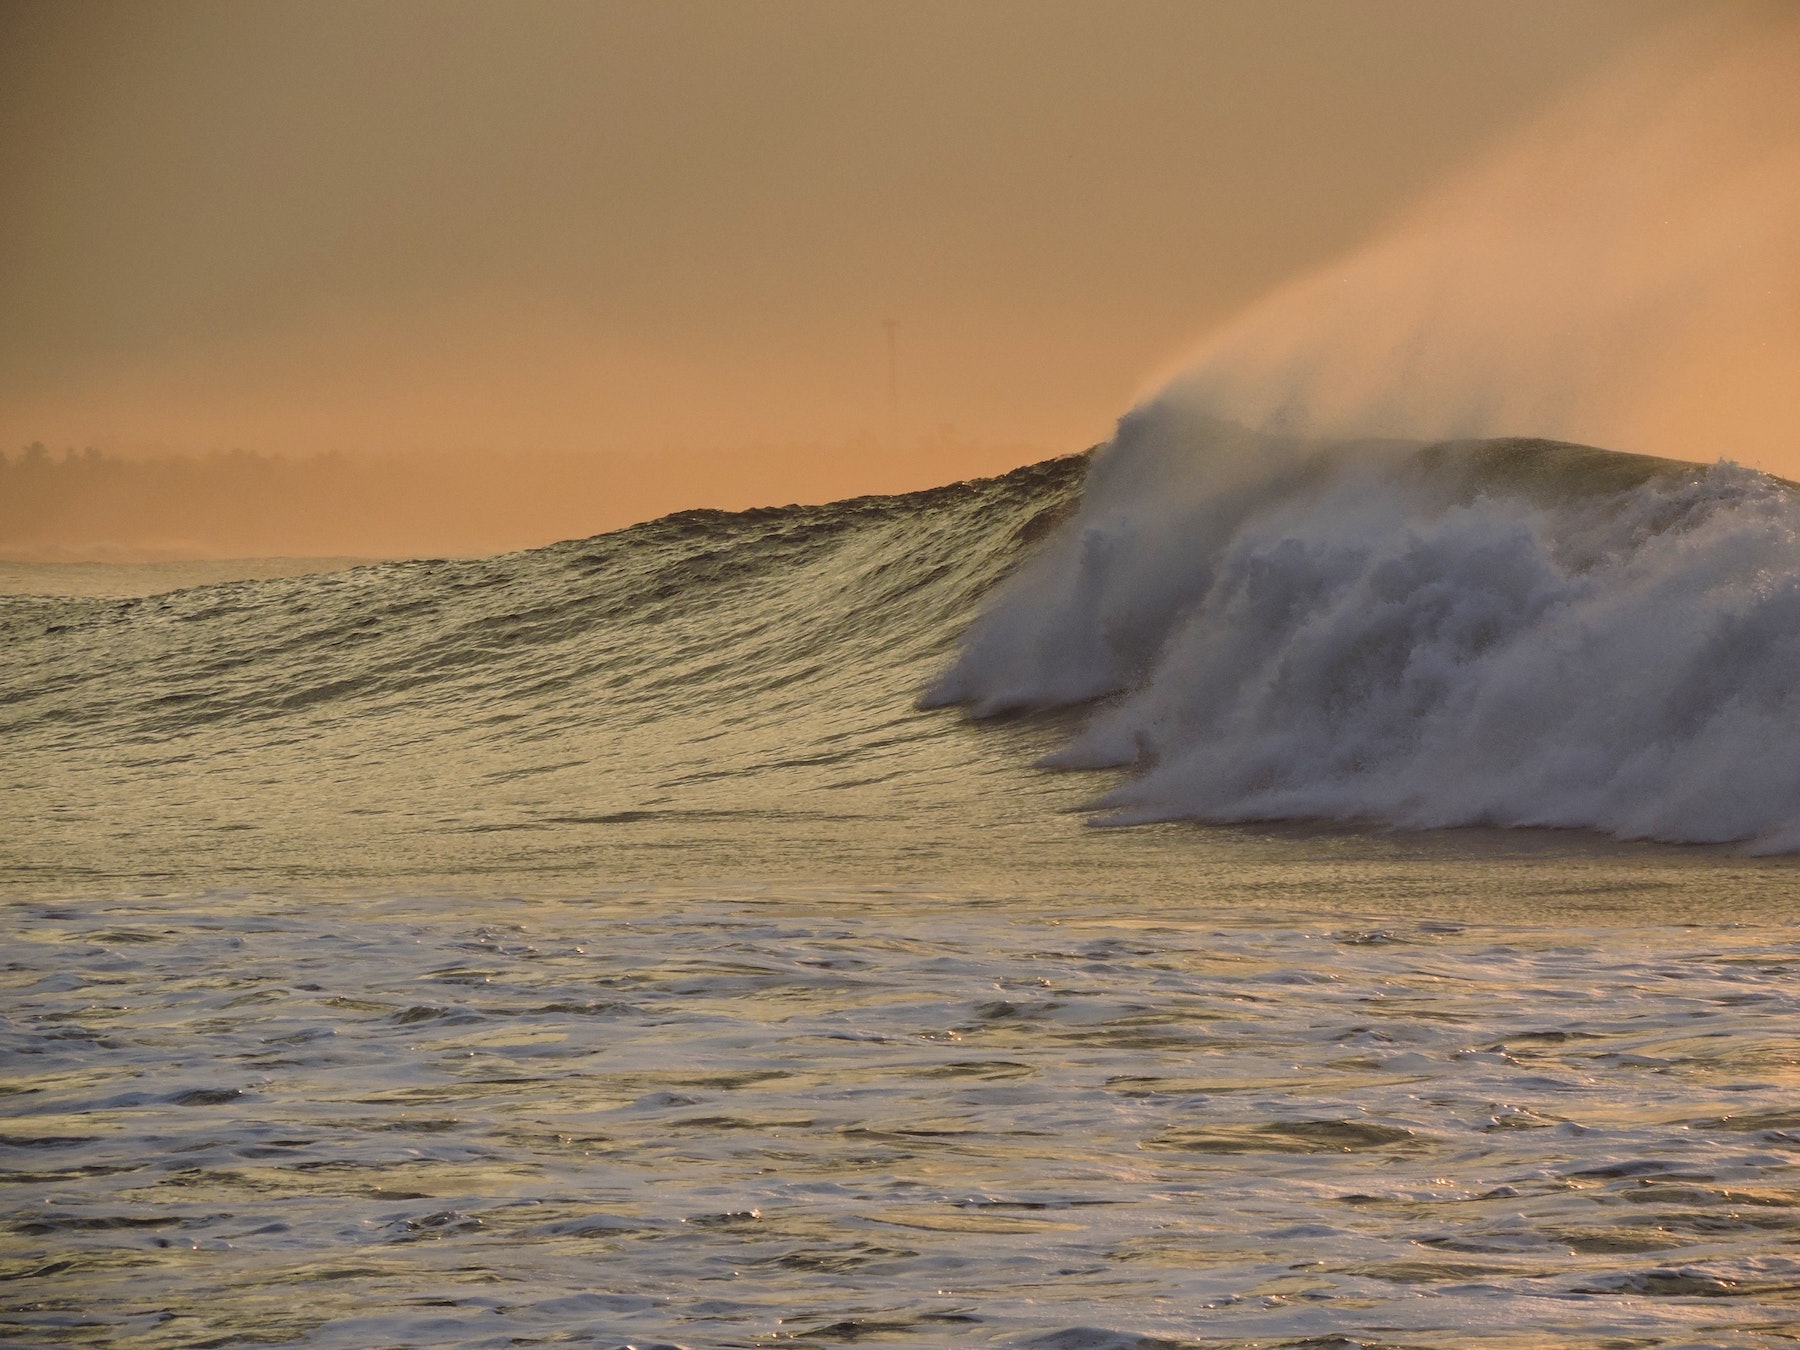 À l’approche des côtes, les vagues du météotsunami s’amplifient par un phénomène de résonance. © Oscar Ävalos, Unsplash